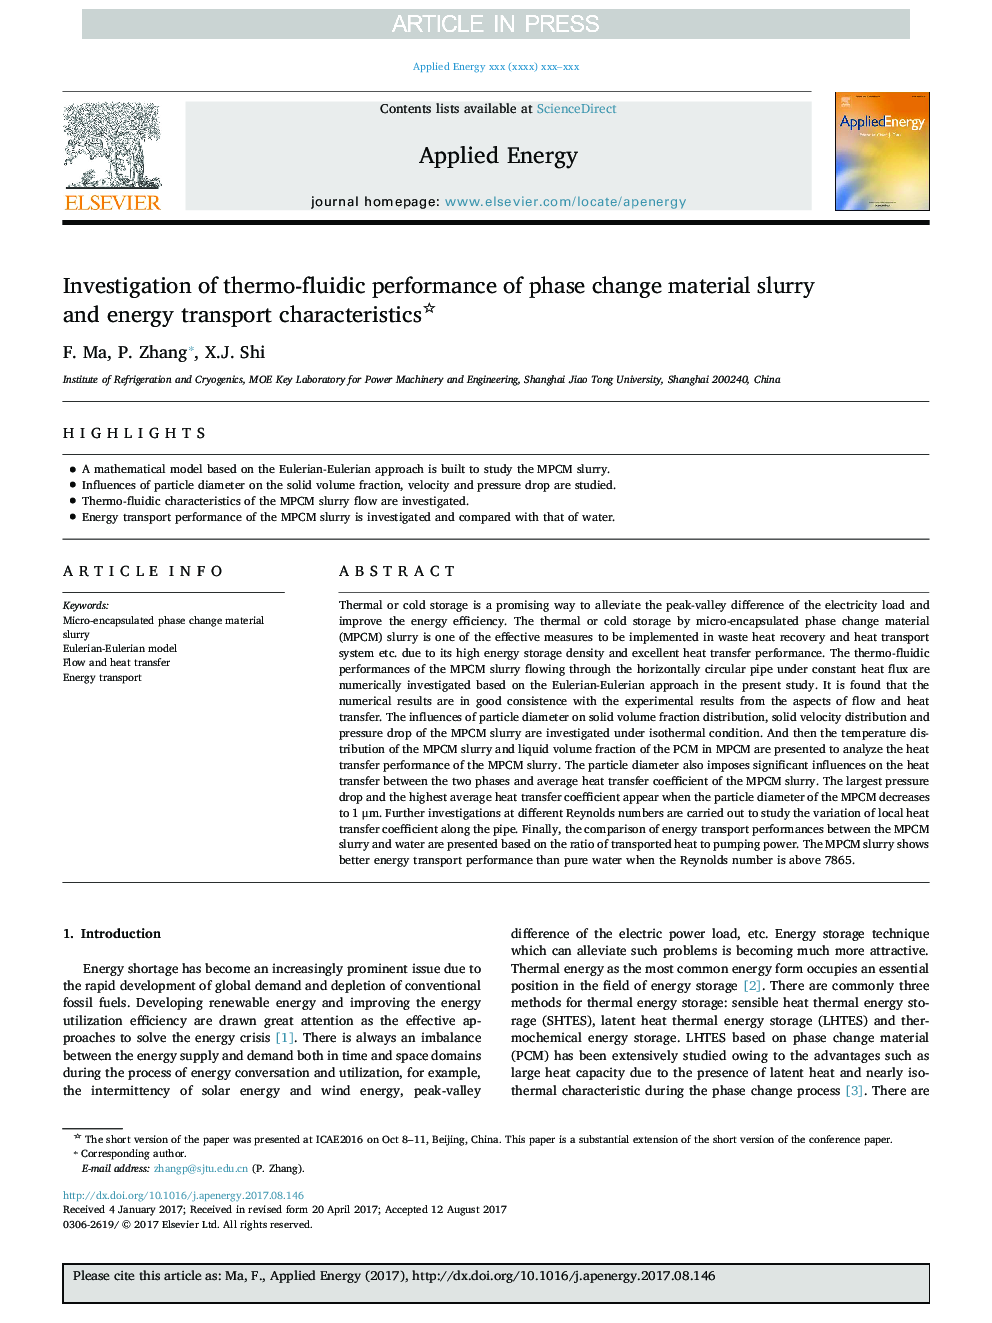 بررسی عملکرد ترموفیزیکی مواد دوغاب مواد تغییر فاز و ویژگی های انتقال انرژی